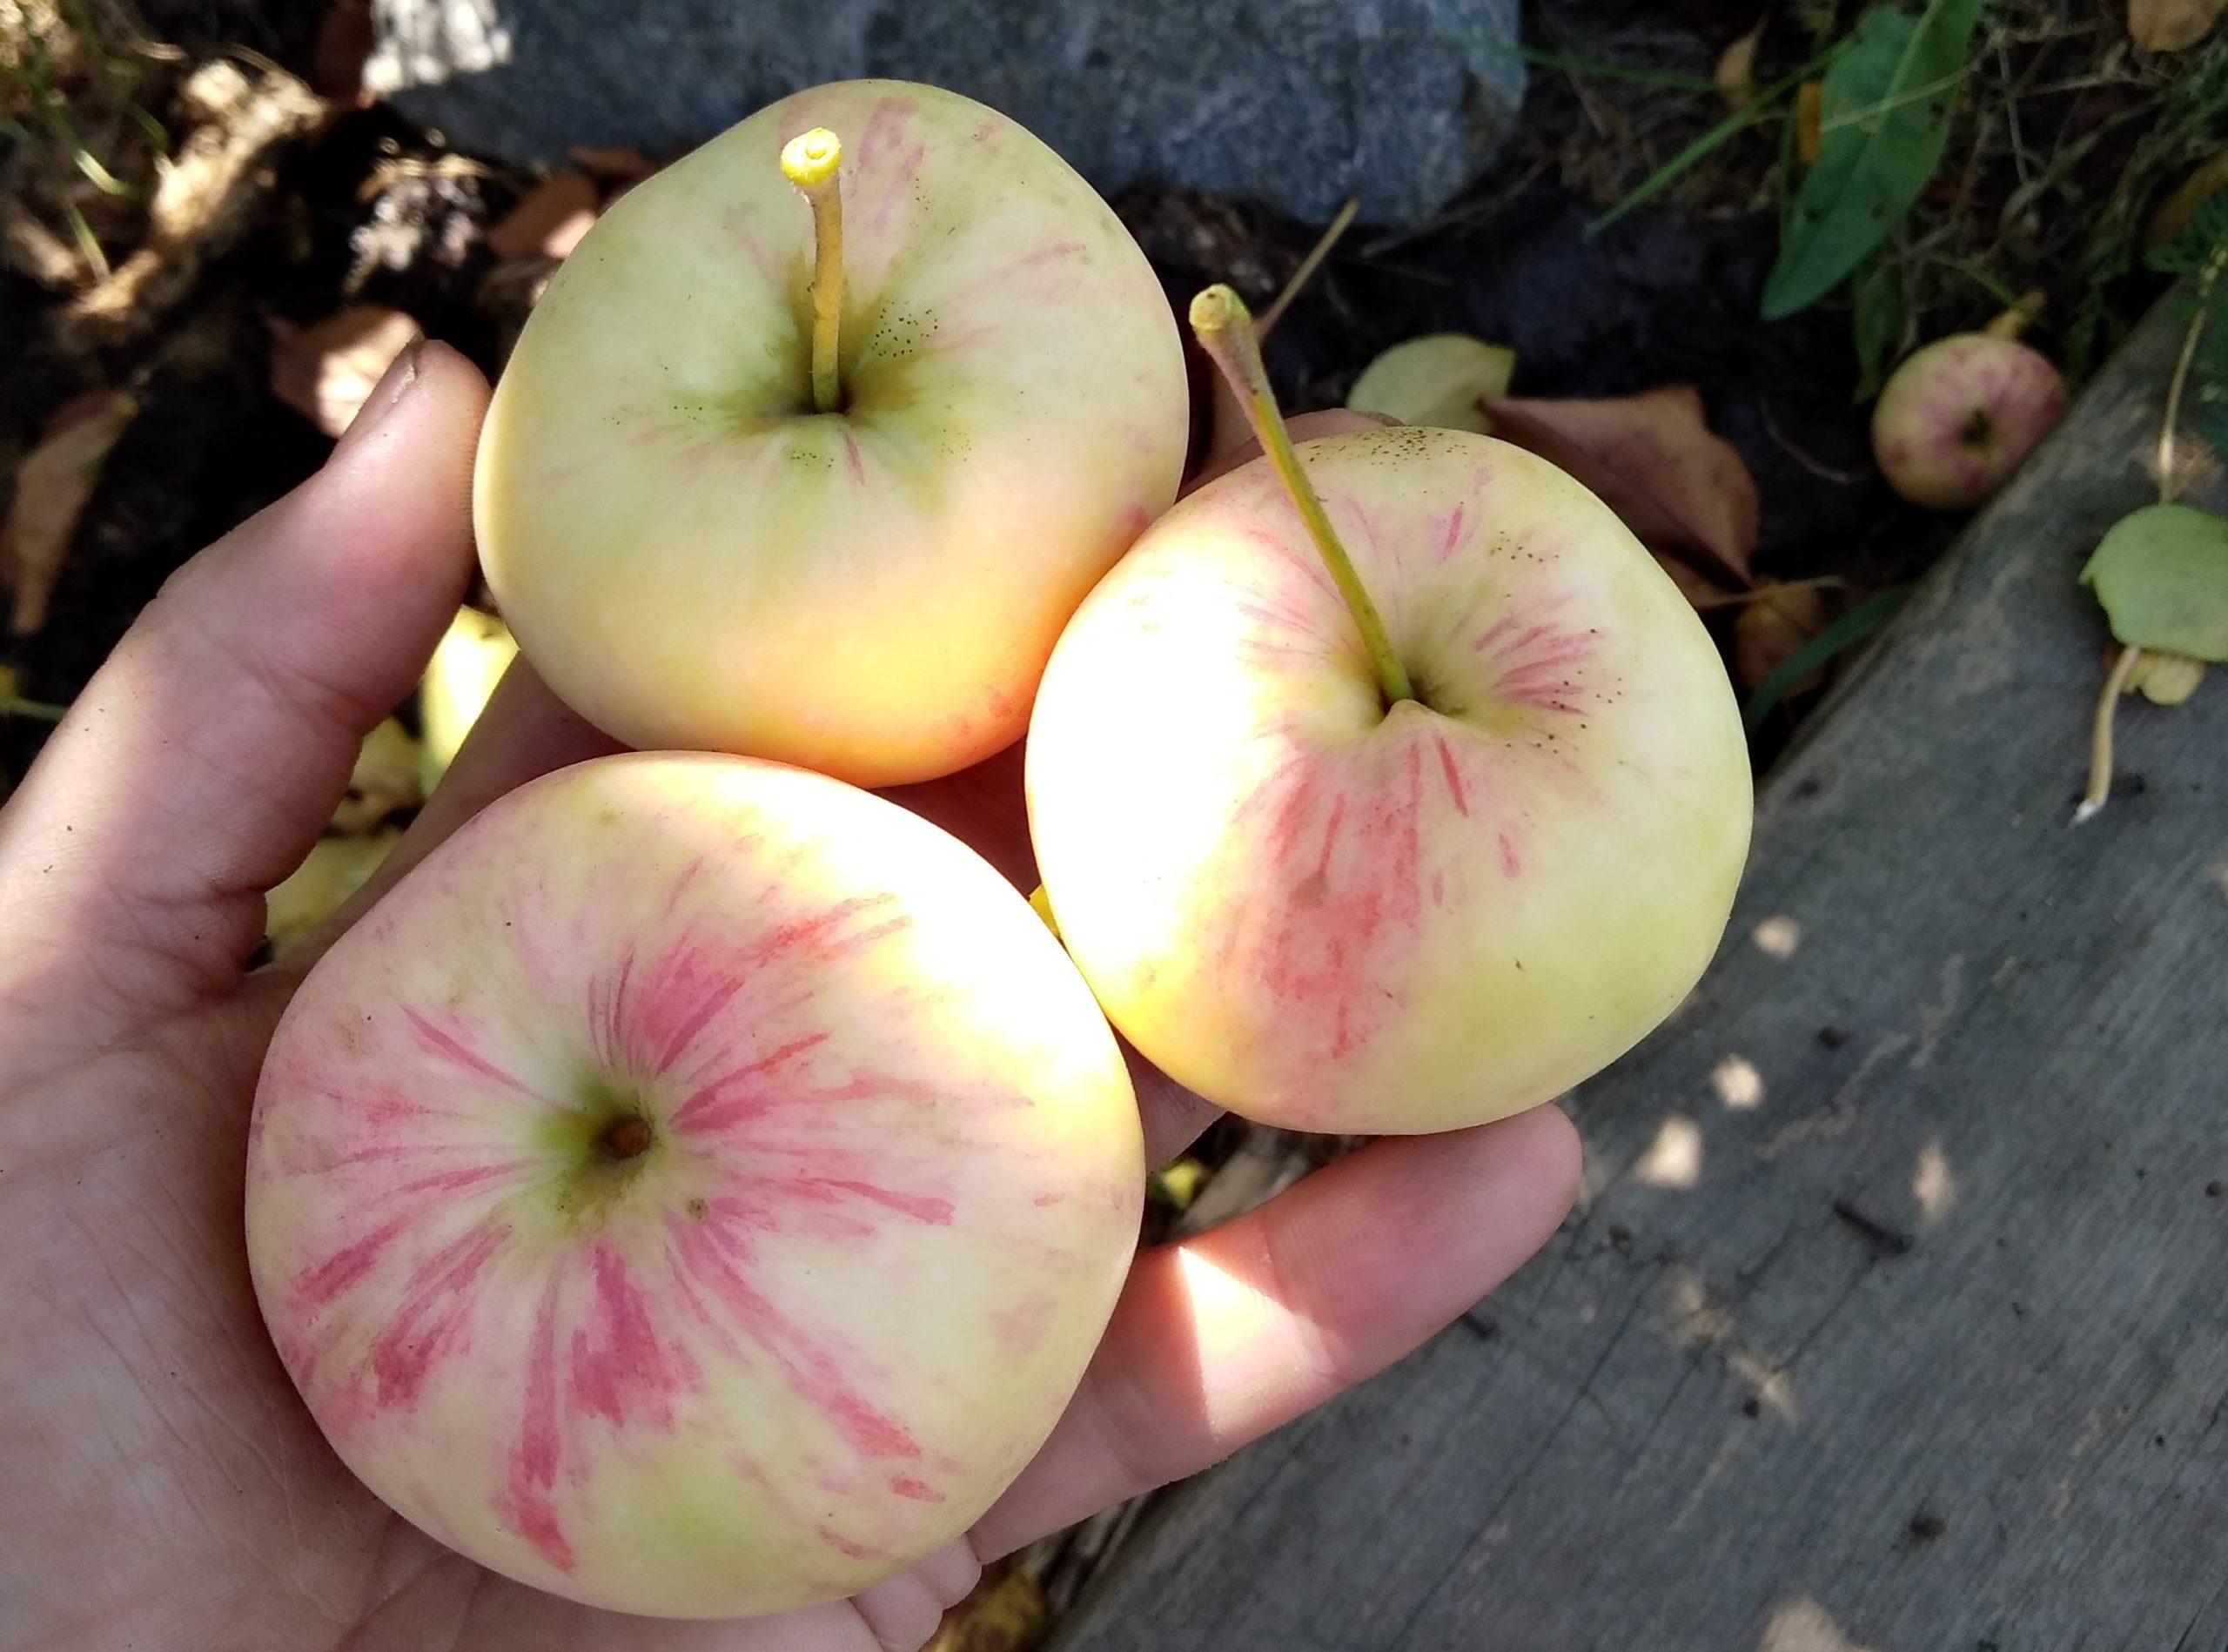 Описание сорта яблони беркутовское: фото яблок, важные характеристики, урожайность с дерева